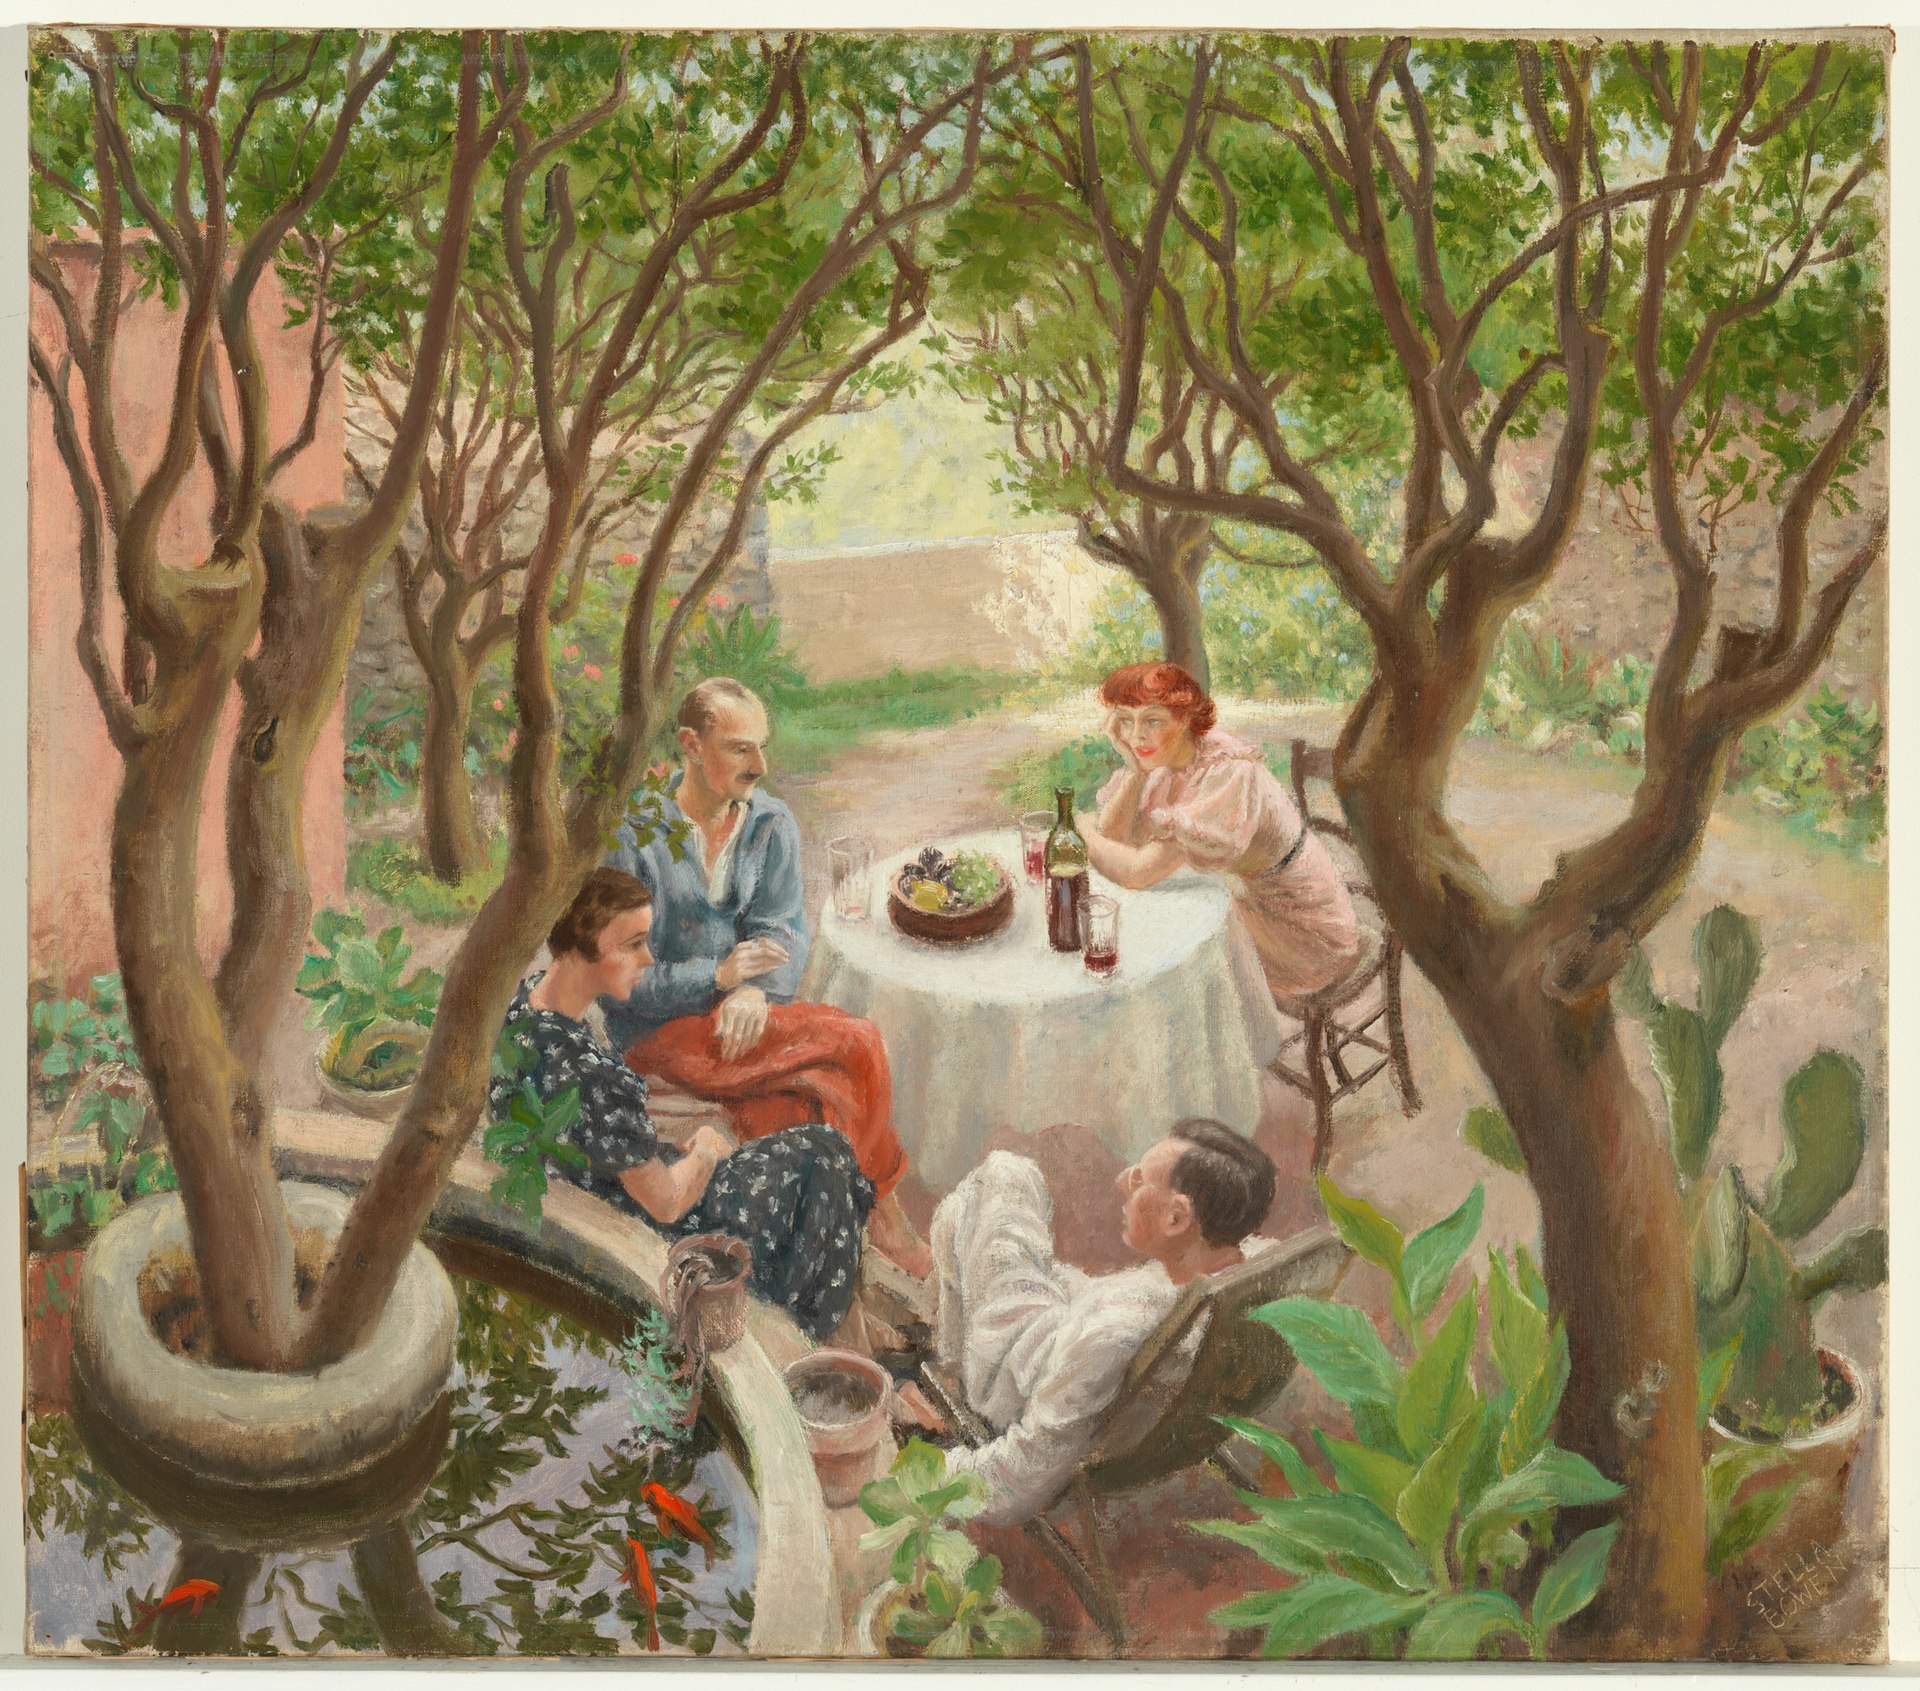 Conversație provensală, Cagnes-sur-Mer by Stella Bowen - 1936 - 63.7 x 72.3 cm 